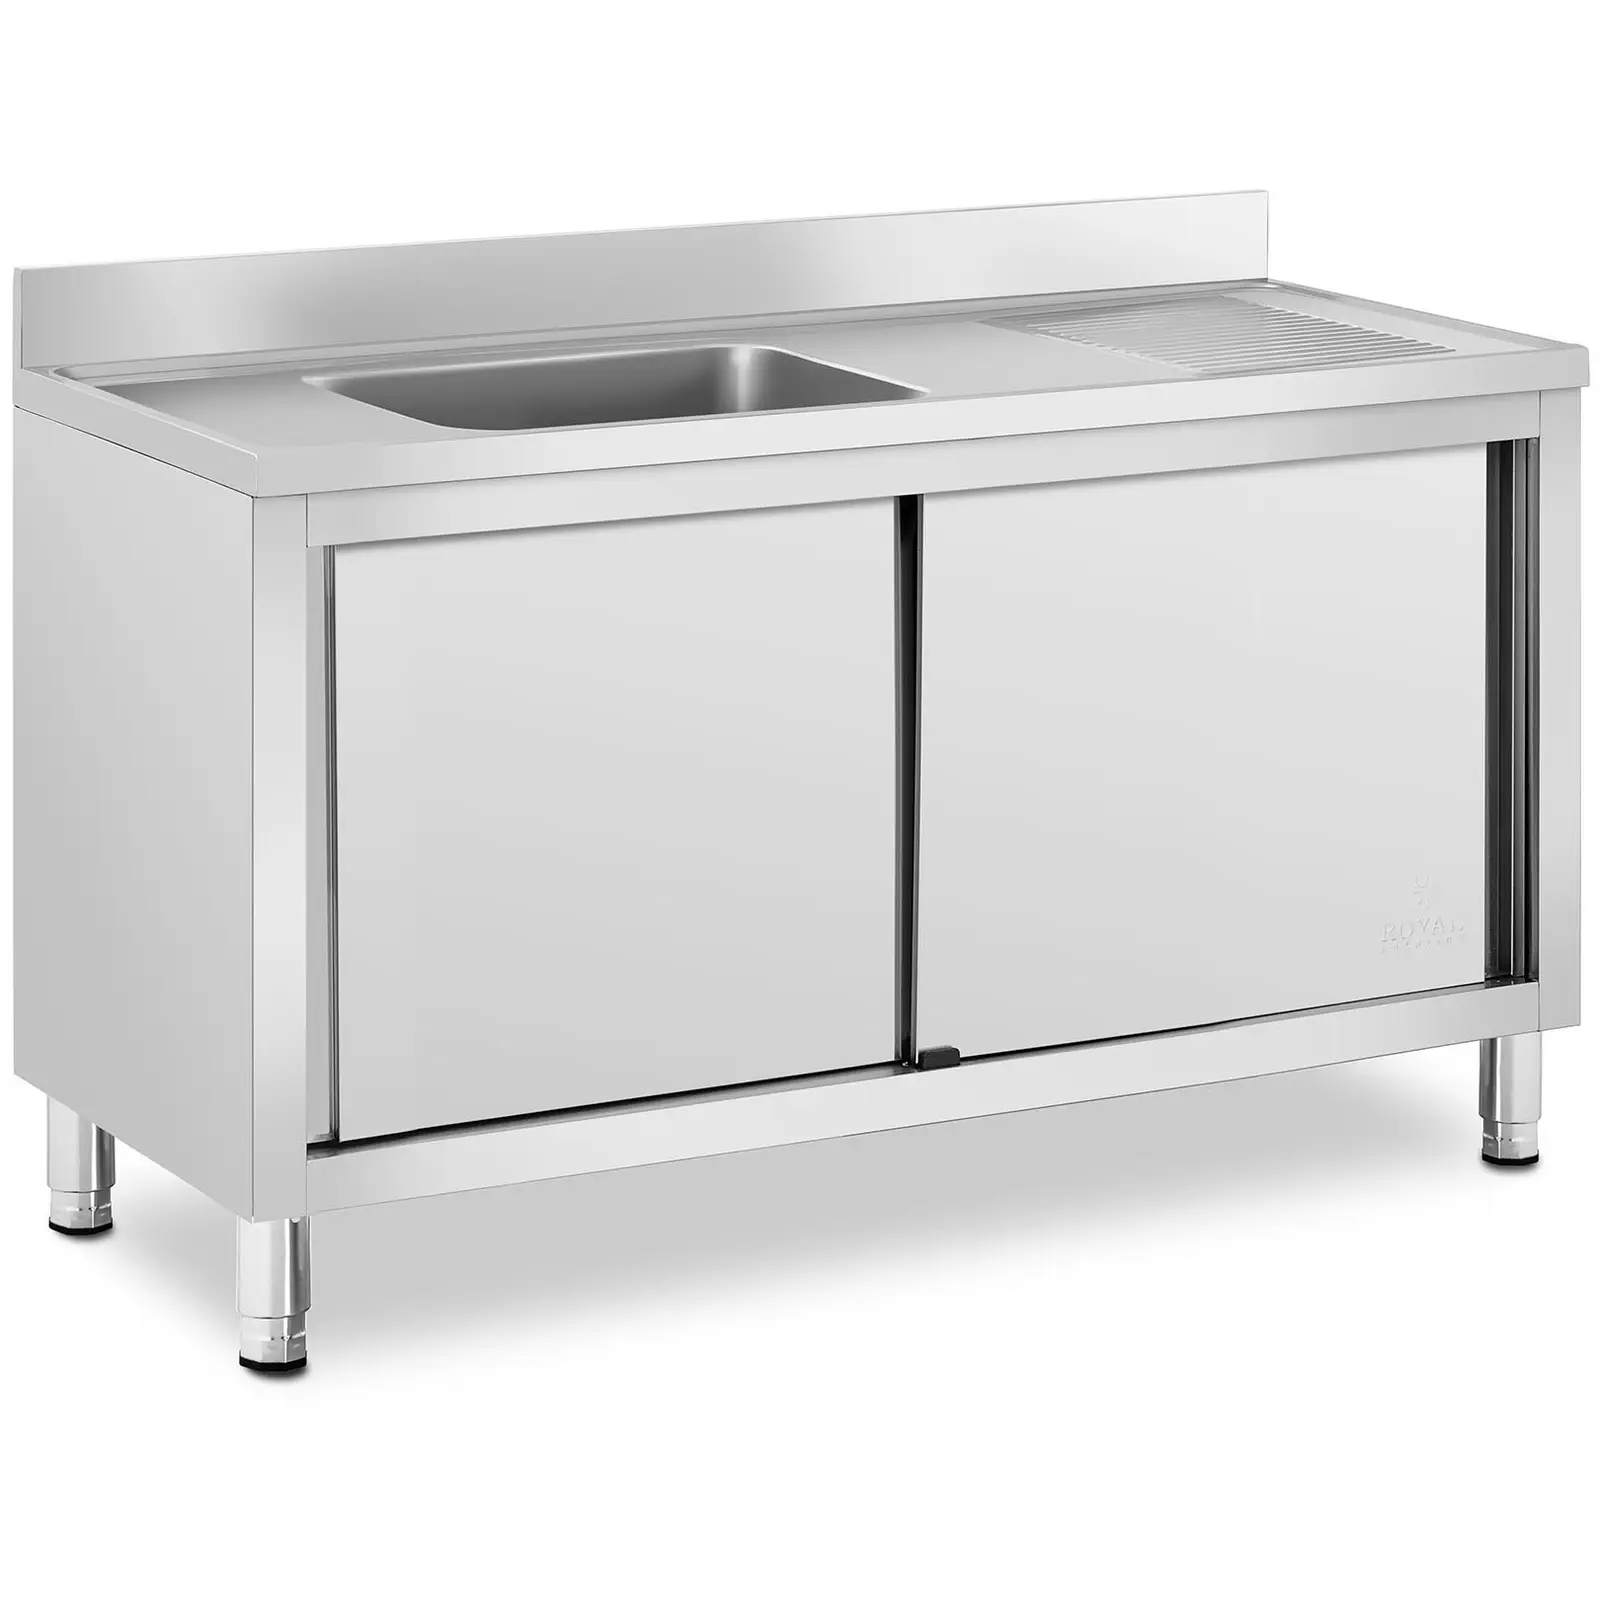 Търговска кухненска мивка - 1 мивка - Royal Catering -  - 500 x 400 x 240 mm